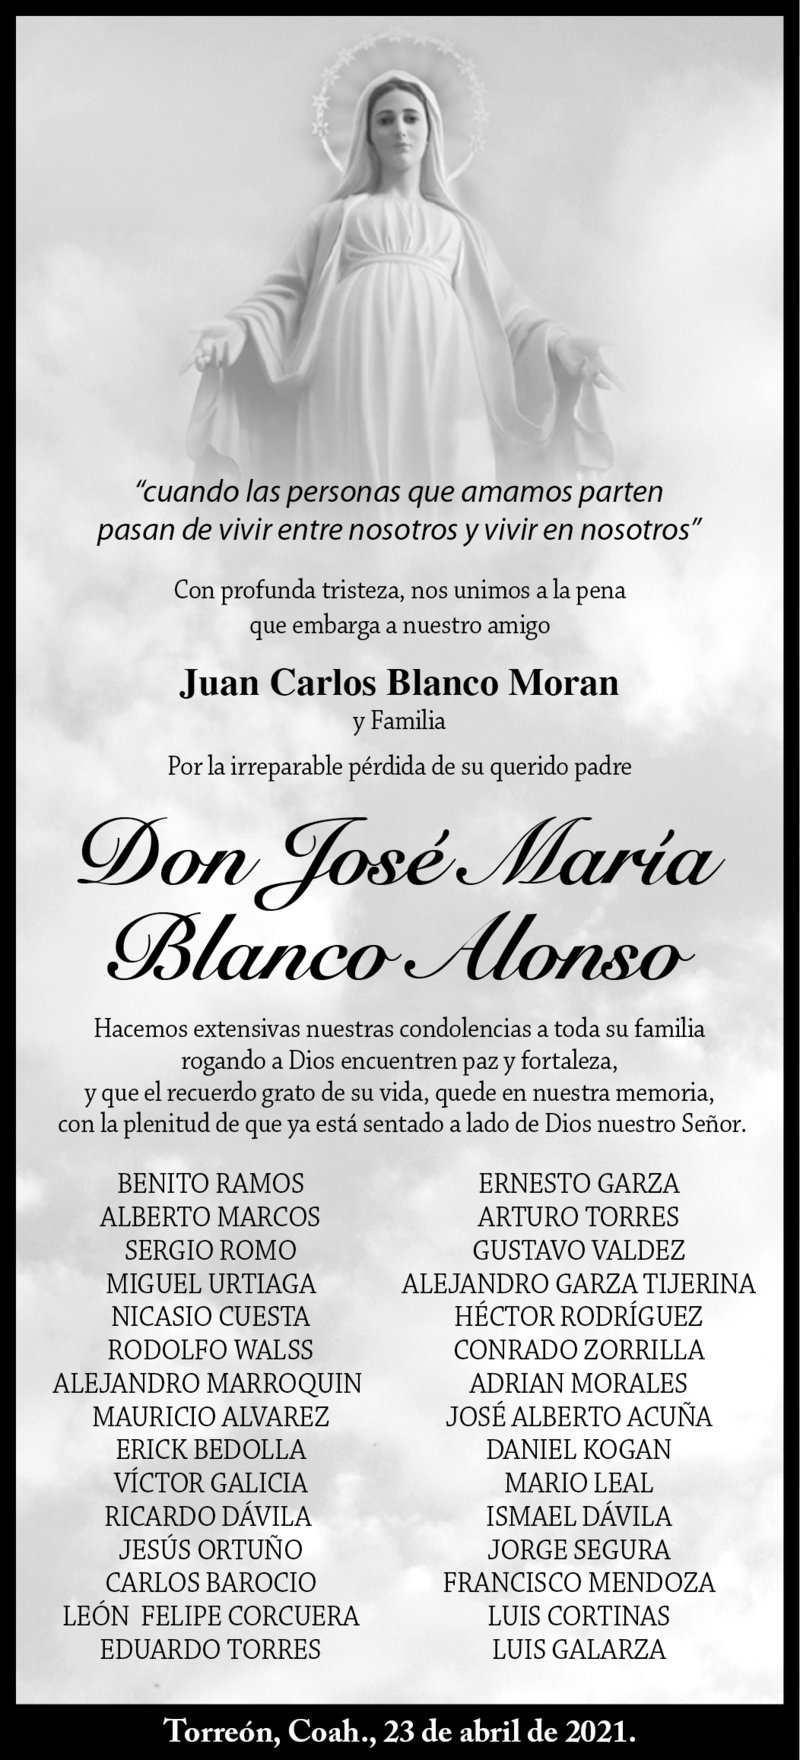 CONDOLENCIA: DON JOSÉ MARÍA BLANCO ALONSO. Amigos de Juan Carlos Blanco Moran y Familia, lamentan el fallecimiento de Don José María Blanco Alonso. Descanse en paz.